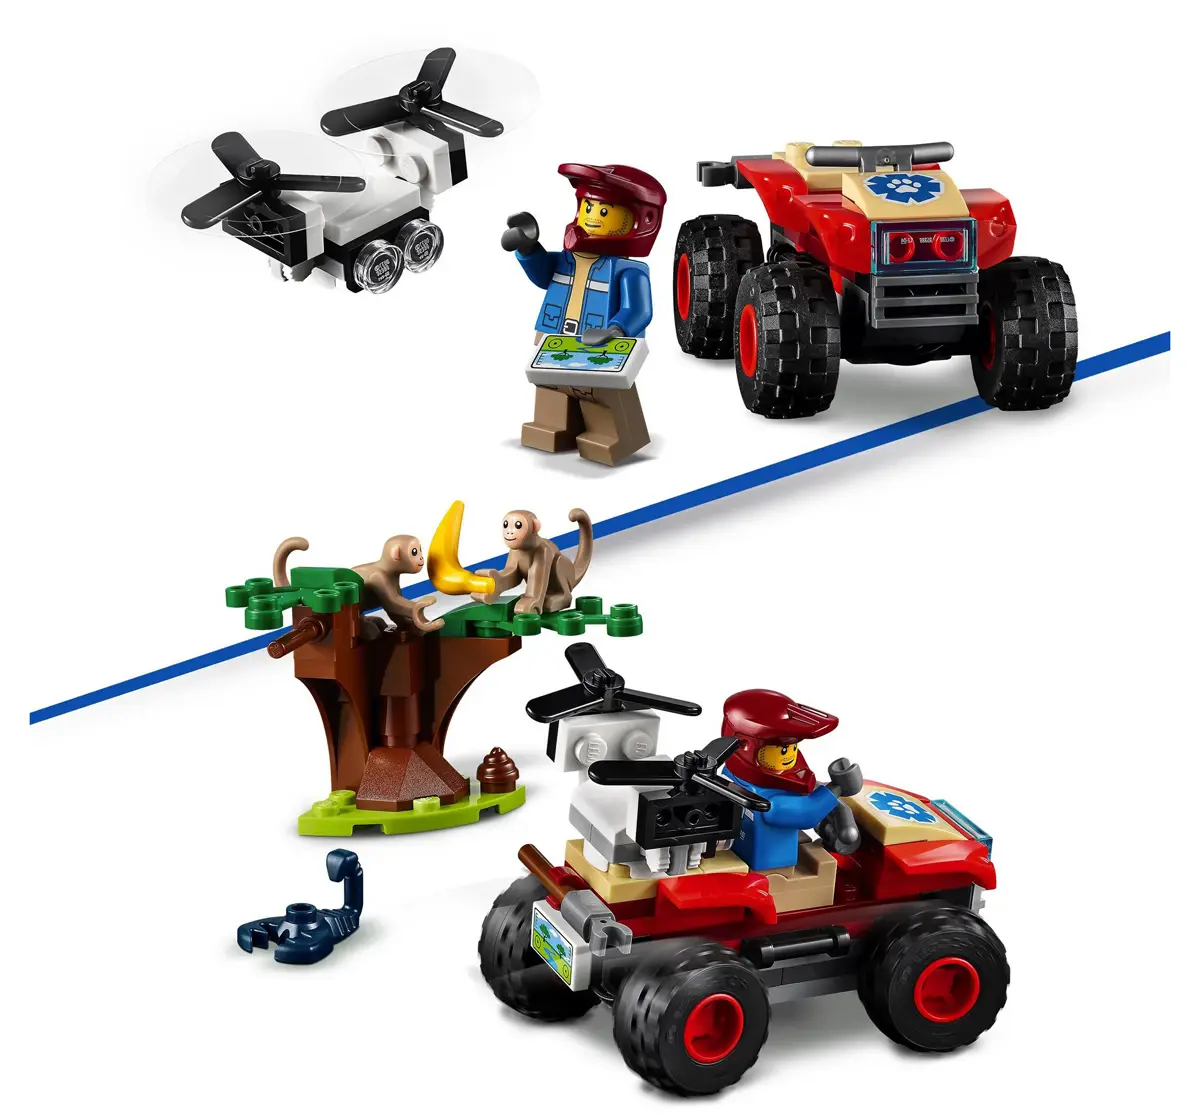 Lego 60300 Wildlife ATV Building Blocks Multicolour 5Y+